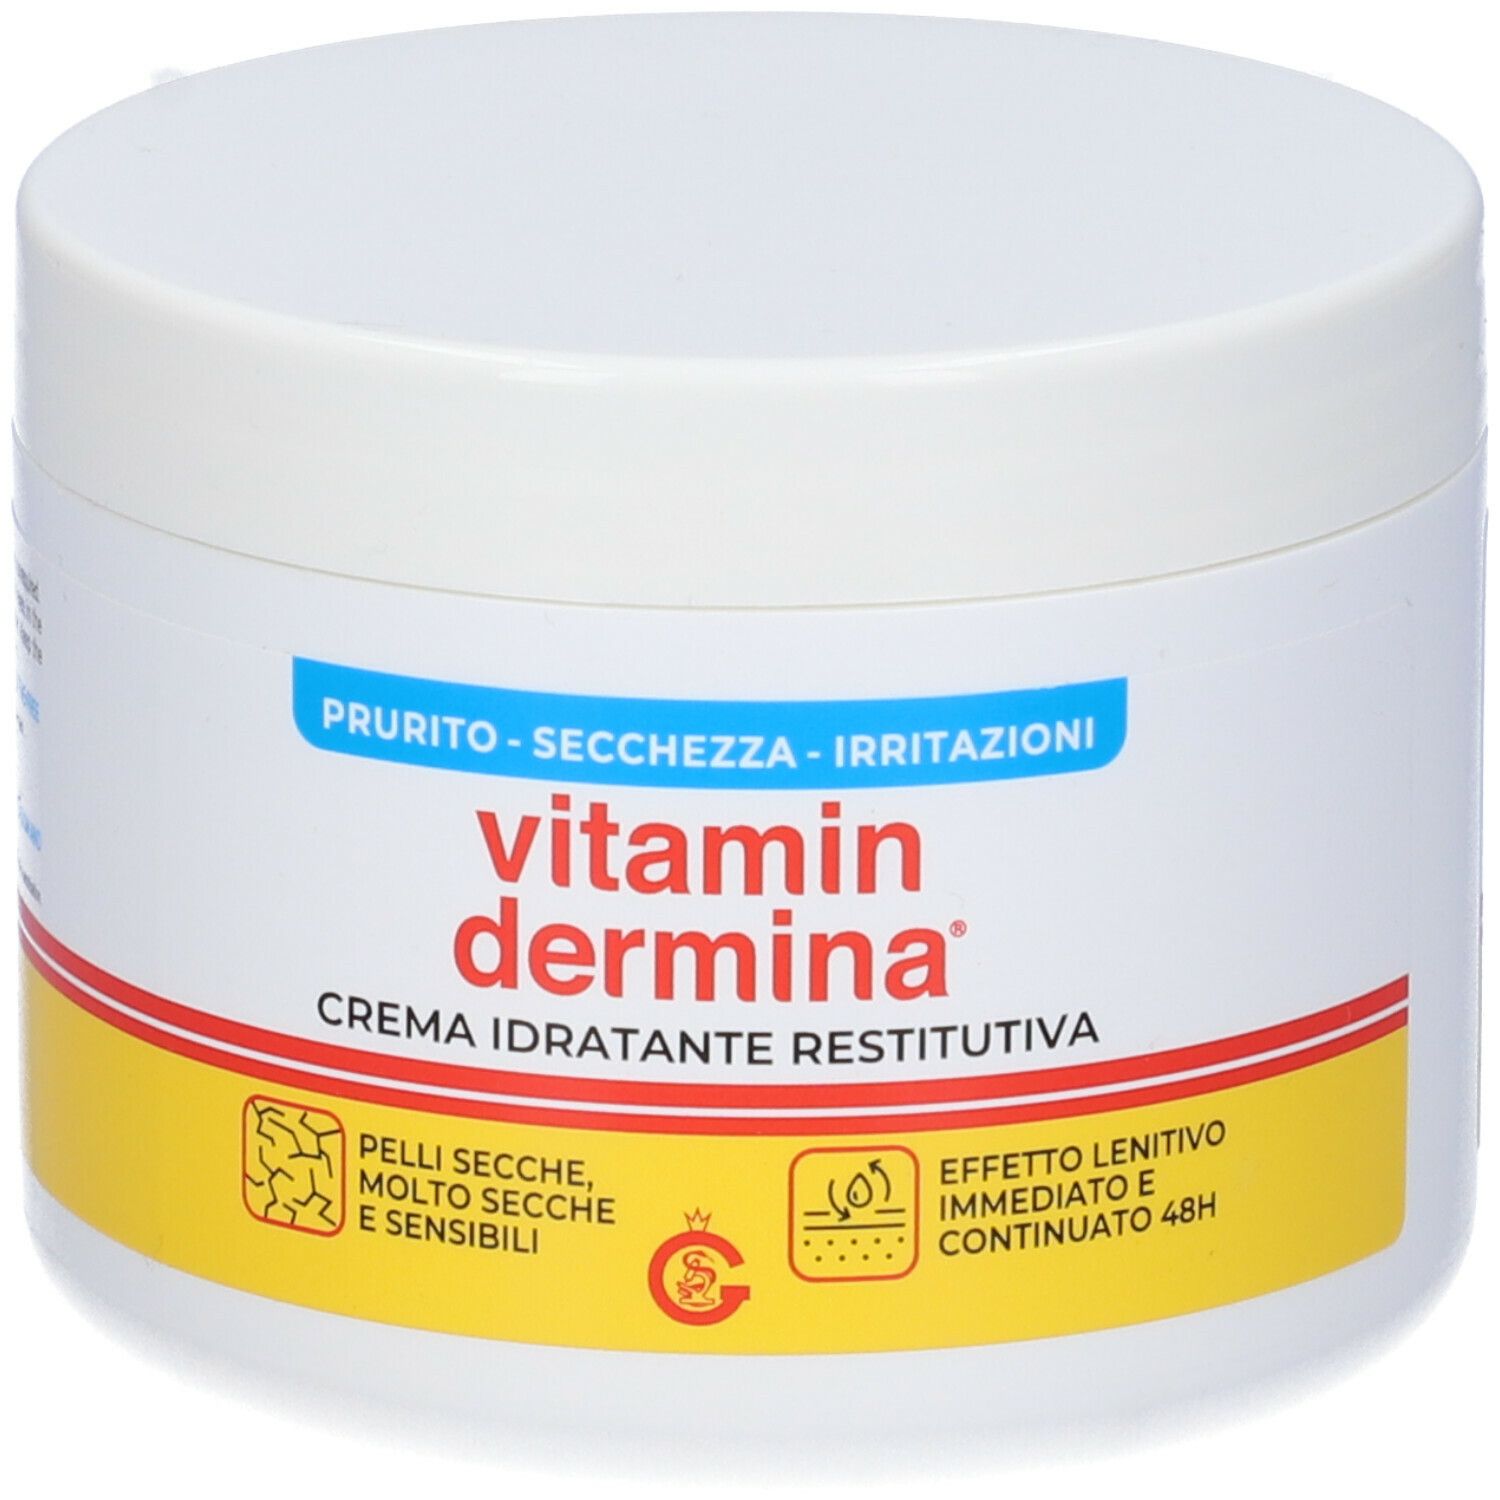 Image of Vitamindermina Crema Idratante Restitutiva 400ml